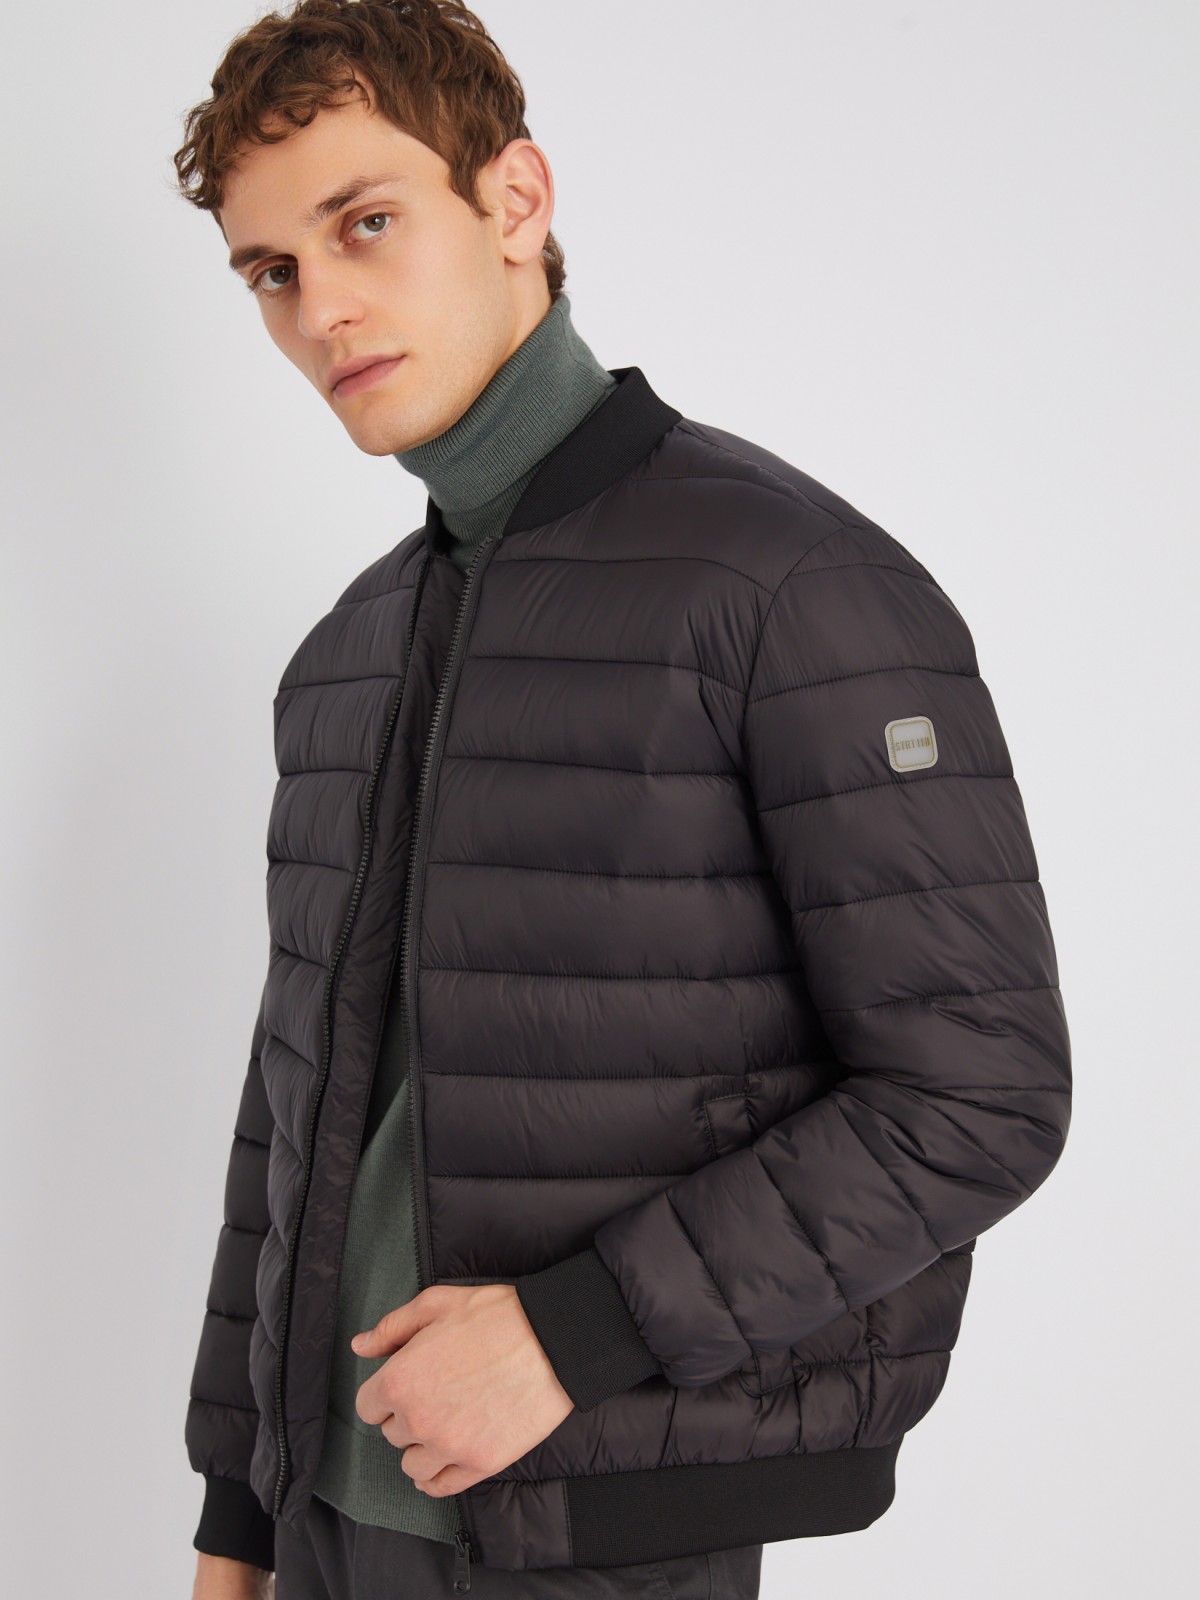 Утеплённая стёганая куртка-бомбер с воротником-стойкой zolla 013335102084, цвет черный, размер M